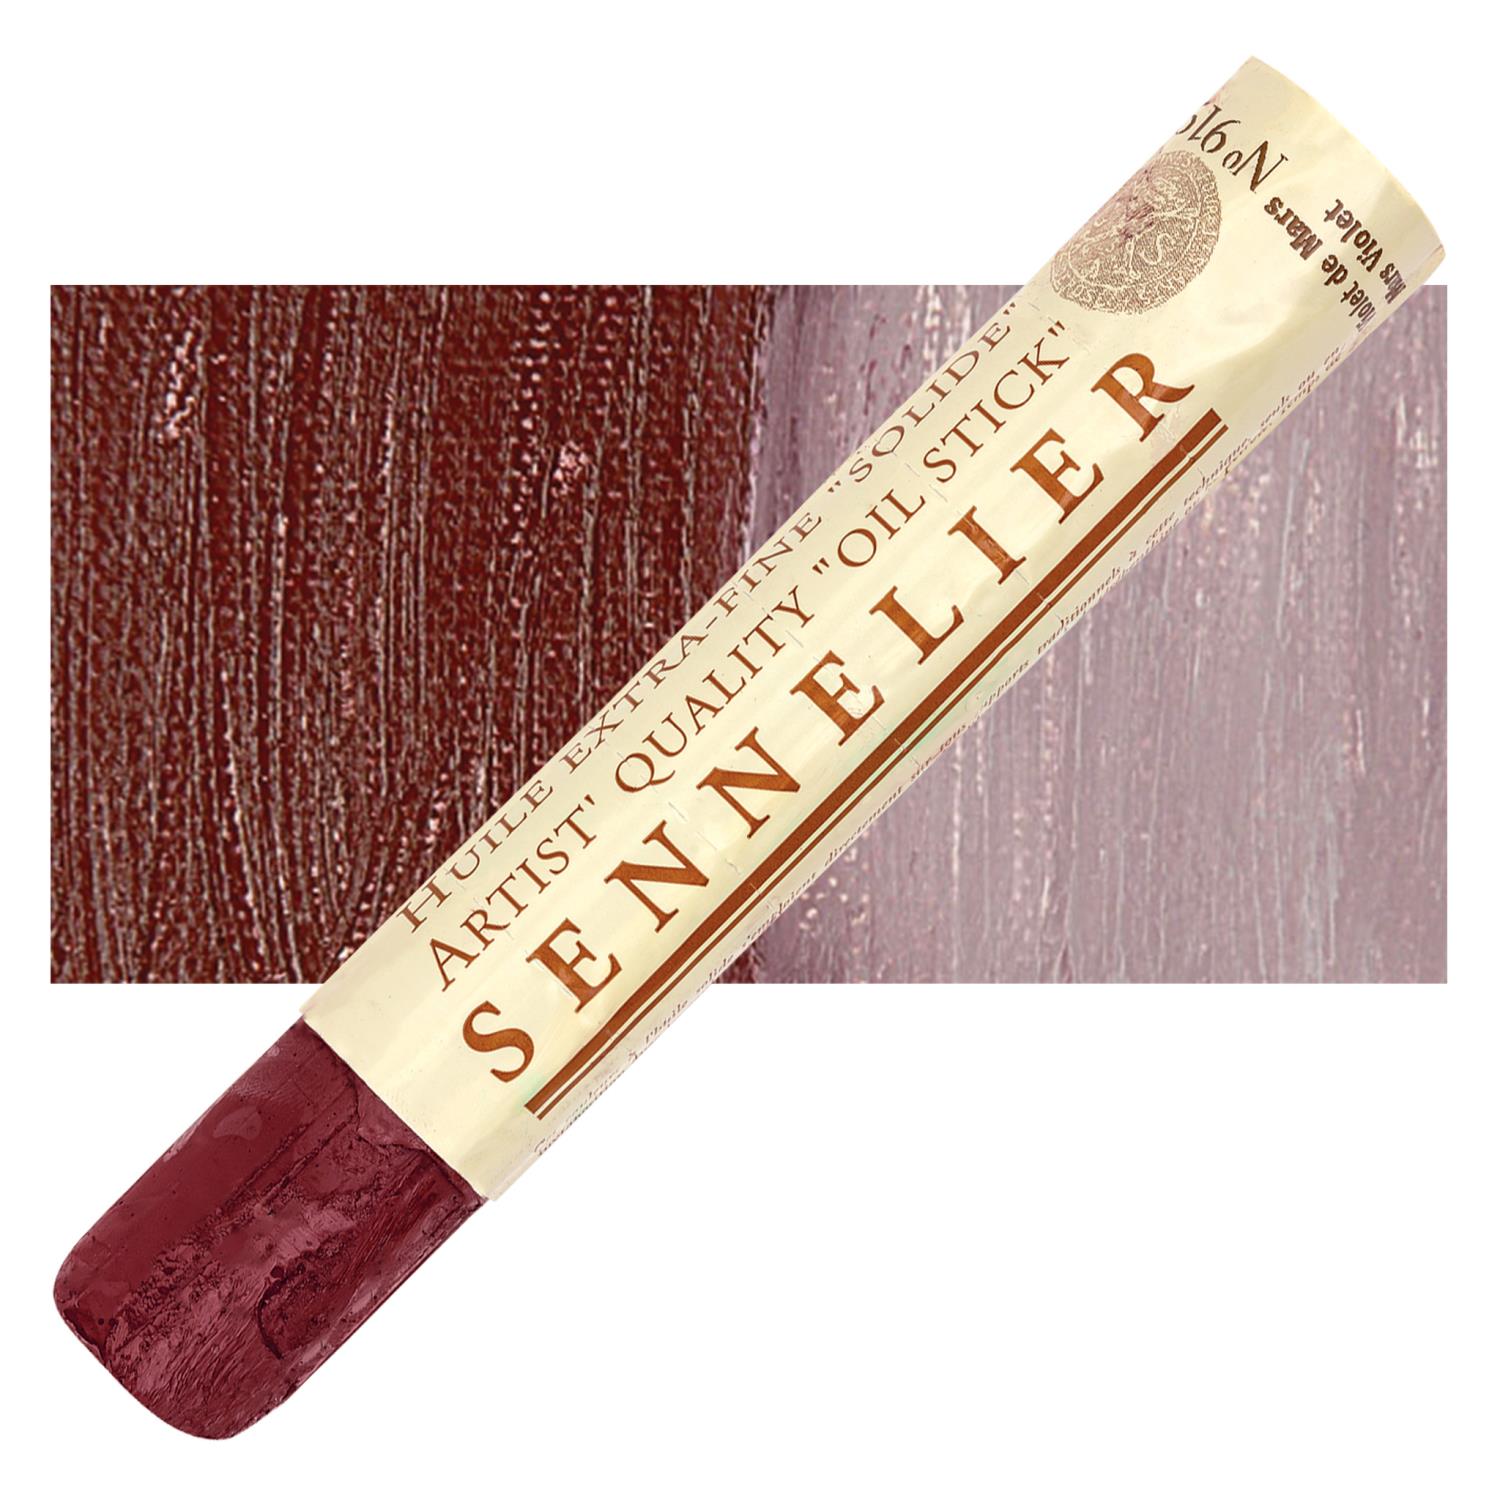 Sennelier Artist Oil Stick 38ml - 919 Mars Violet S1 utgår